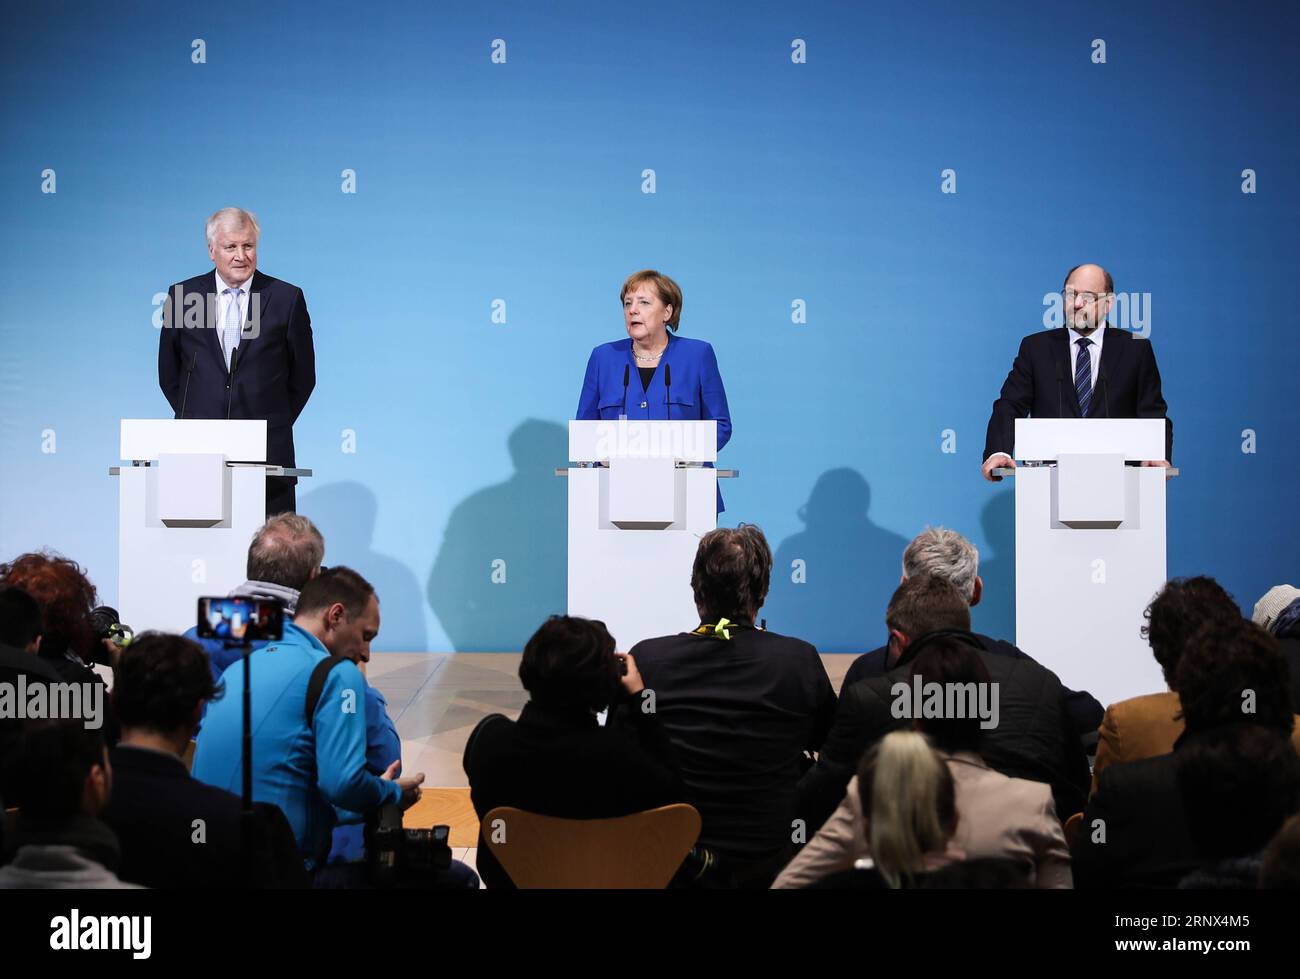 (180112) -- BERLIN, 12. Januar 2018 -- Bundeskanzlerin und Vorsitzende der Deutschen Christlich Demokratischen Union (CDU) Angela Merkel (C), der Vorsitzende der CSU Horst Seehofer (L) und der Vorsitzende der SPD Martin Schulz nehmen nach Koalitionsgesprächen am 12. Januar 2018 am Hauptsitz der SPD in Berlin an einer gemeinsamen Pressekonferenz Teil. Die Konservativen und Sozialdemokraten (SPD) der deutschen Bundeskanzlerin Angela Merkel haben am Freitag in ihren Sondierungsgesprächen zur Bildung einer neuen Koalitionsregierung einen Durchbruch erzielt, berichteten lokale Medien. )(srb) DEUTSCHLAND- Stockfoto